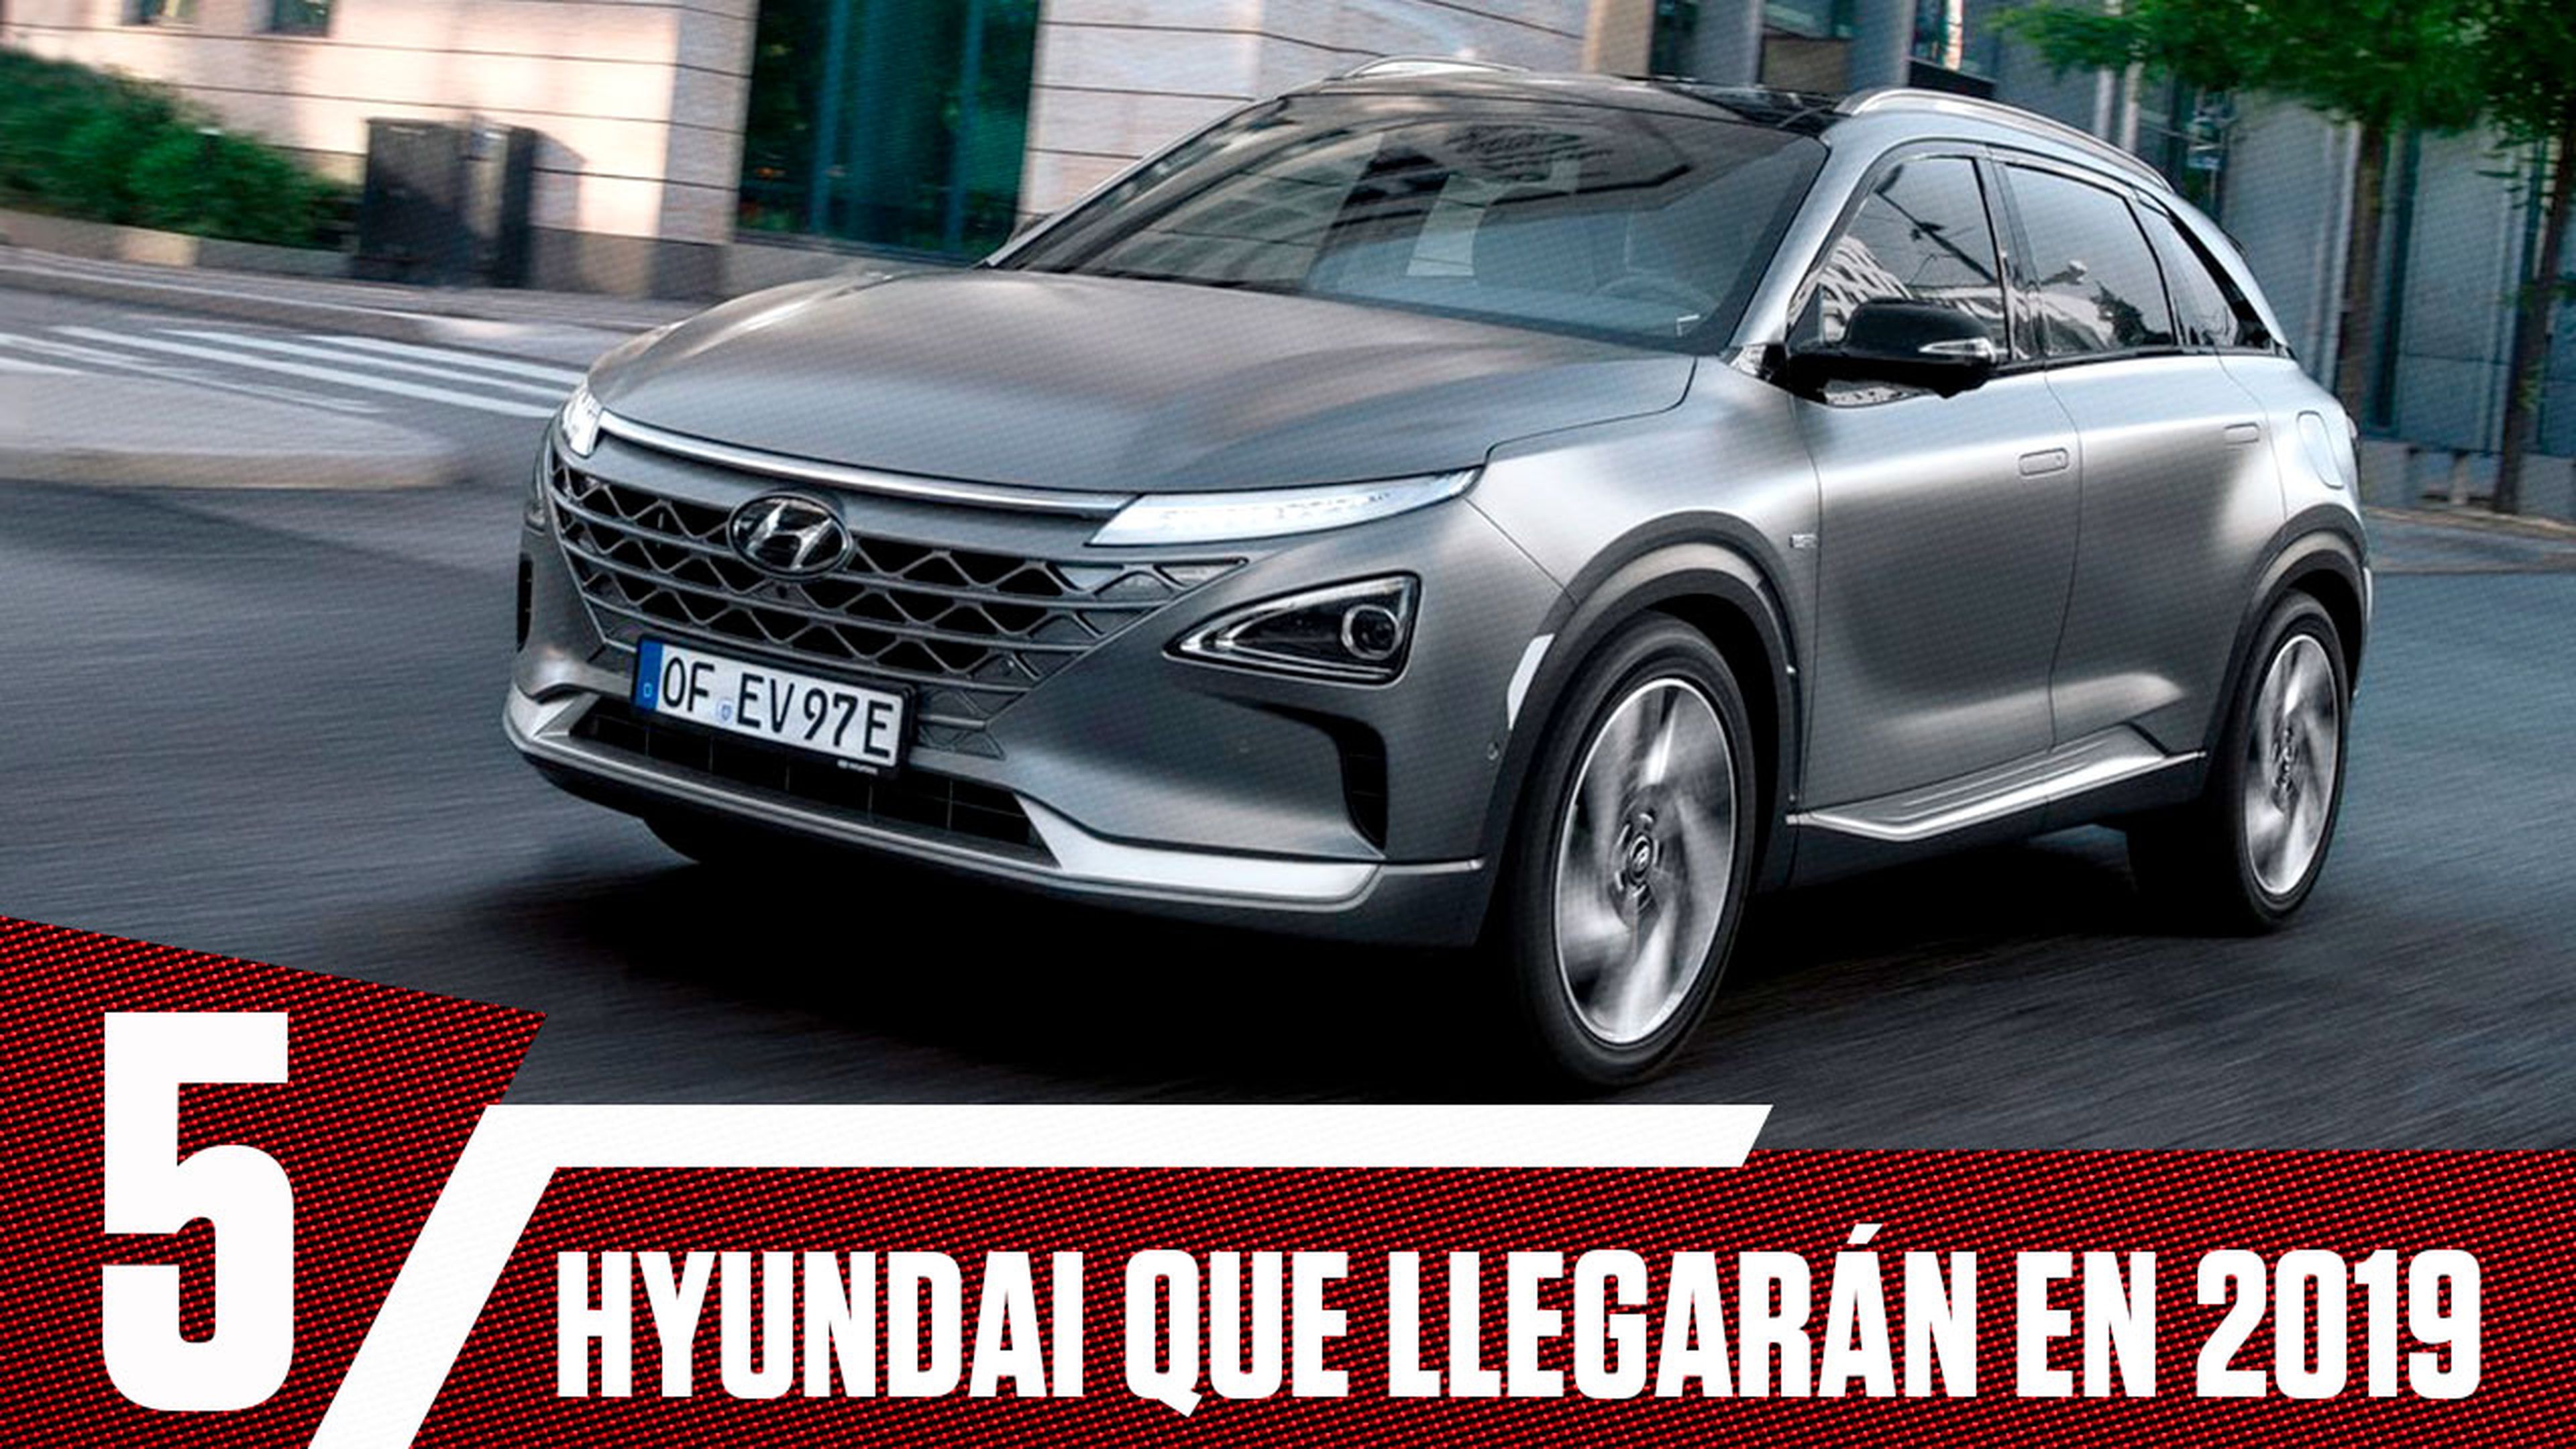 VÍDEO: Estos son los 5 Hyundai de los que más se va a hablar en 2019